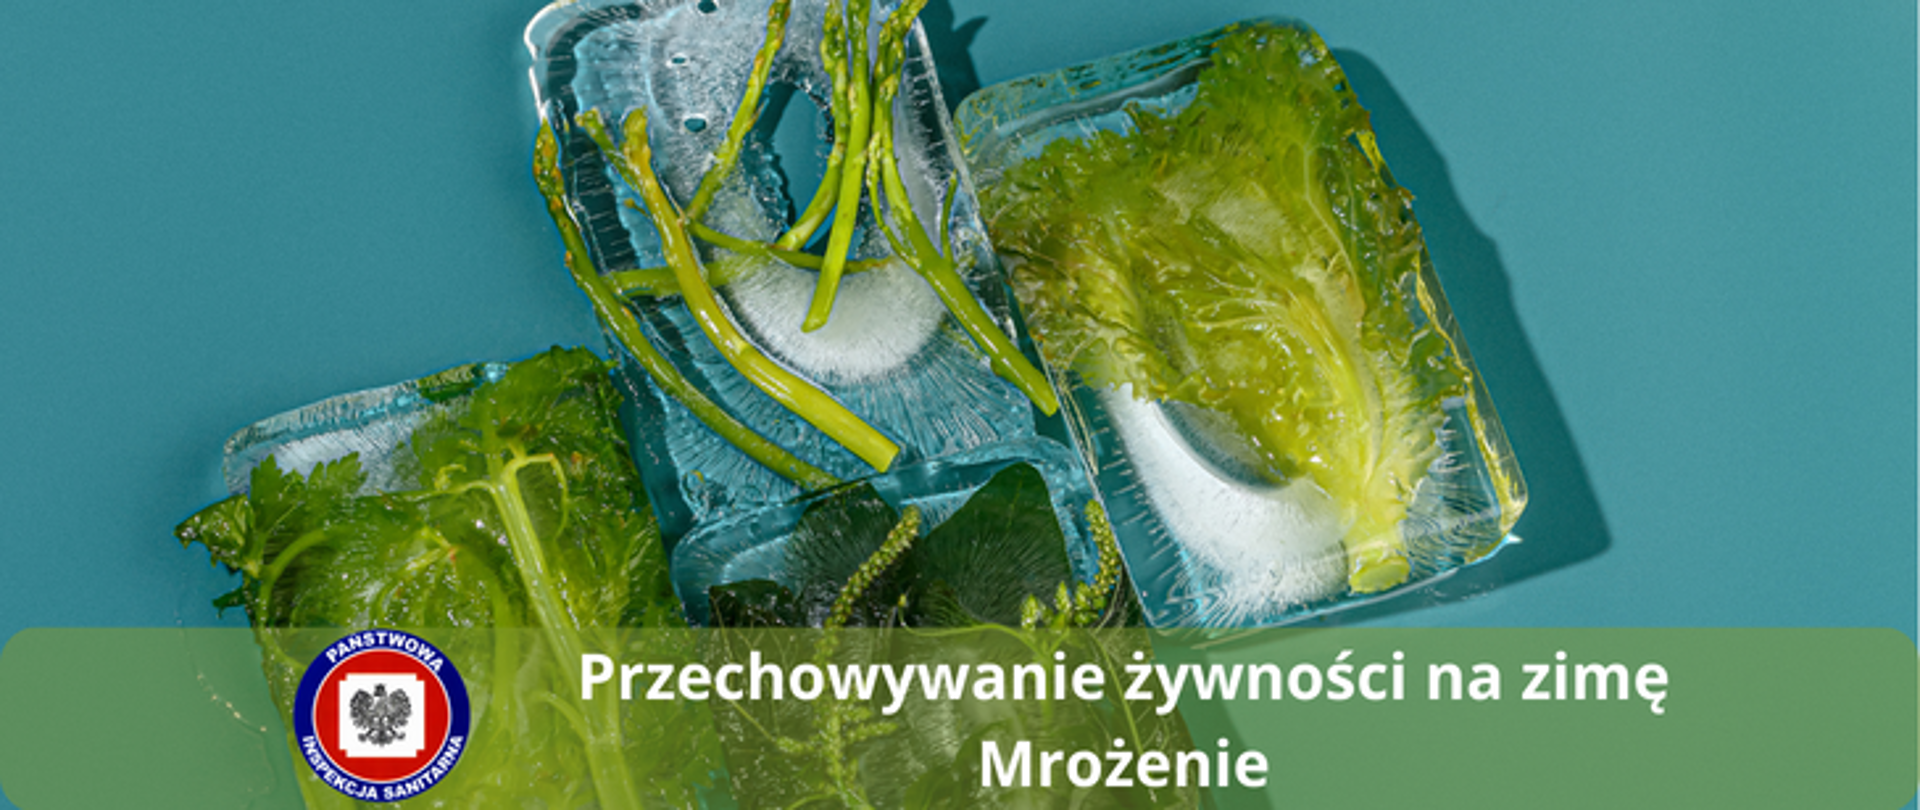 Zdjęcie przedstawia kostki lodu w których zamrożone są warzywa "Przechowywanie żywności na zimę - mrożenie?